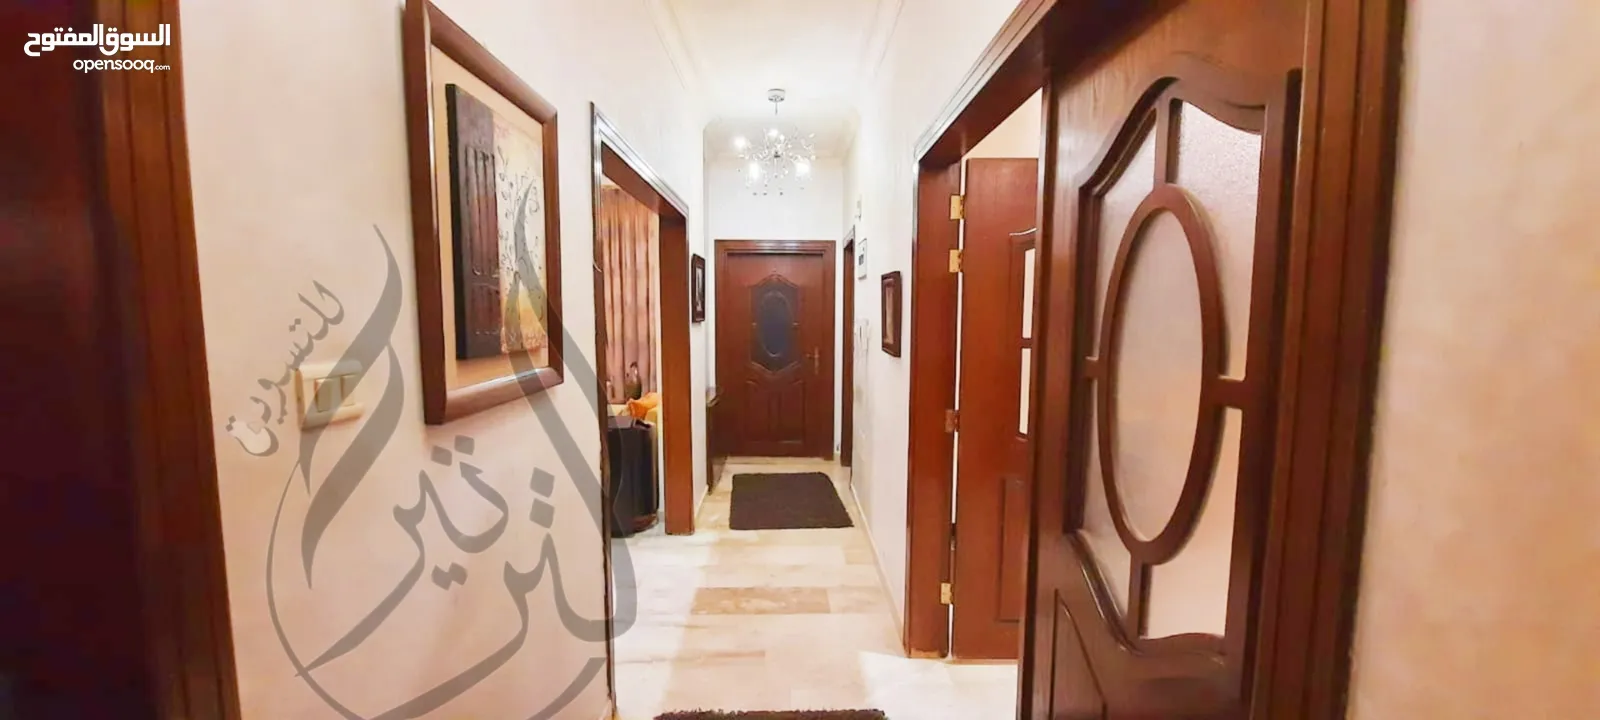 شقة مميزة 228م  ملوكية للبيع  بمنطقة خلدا الراقية